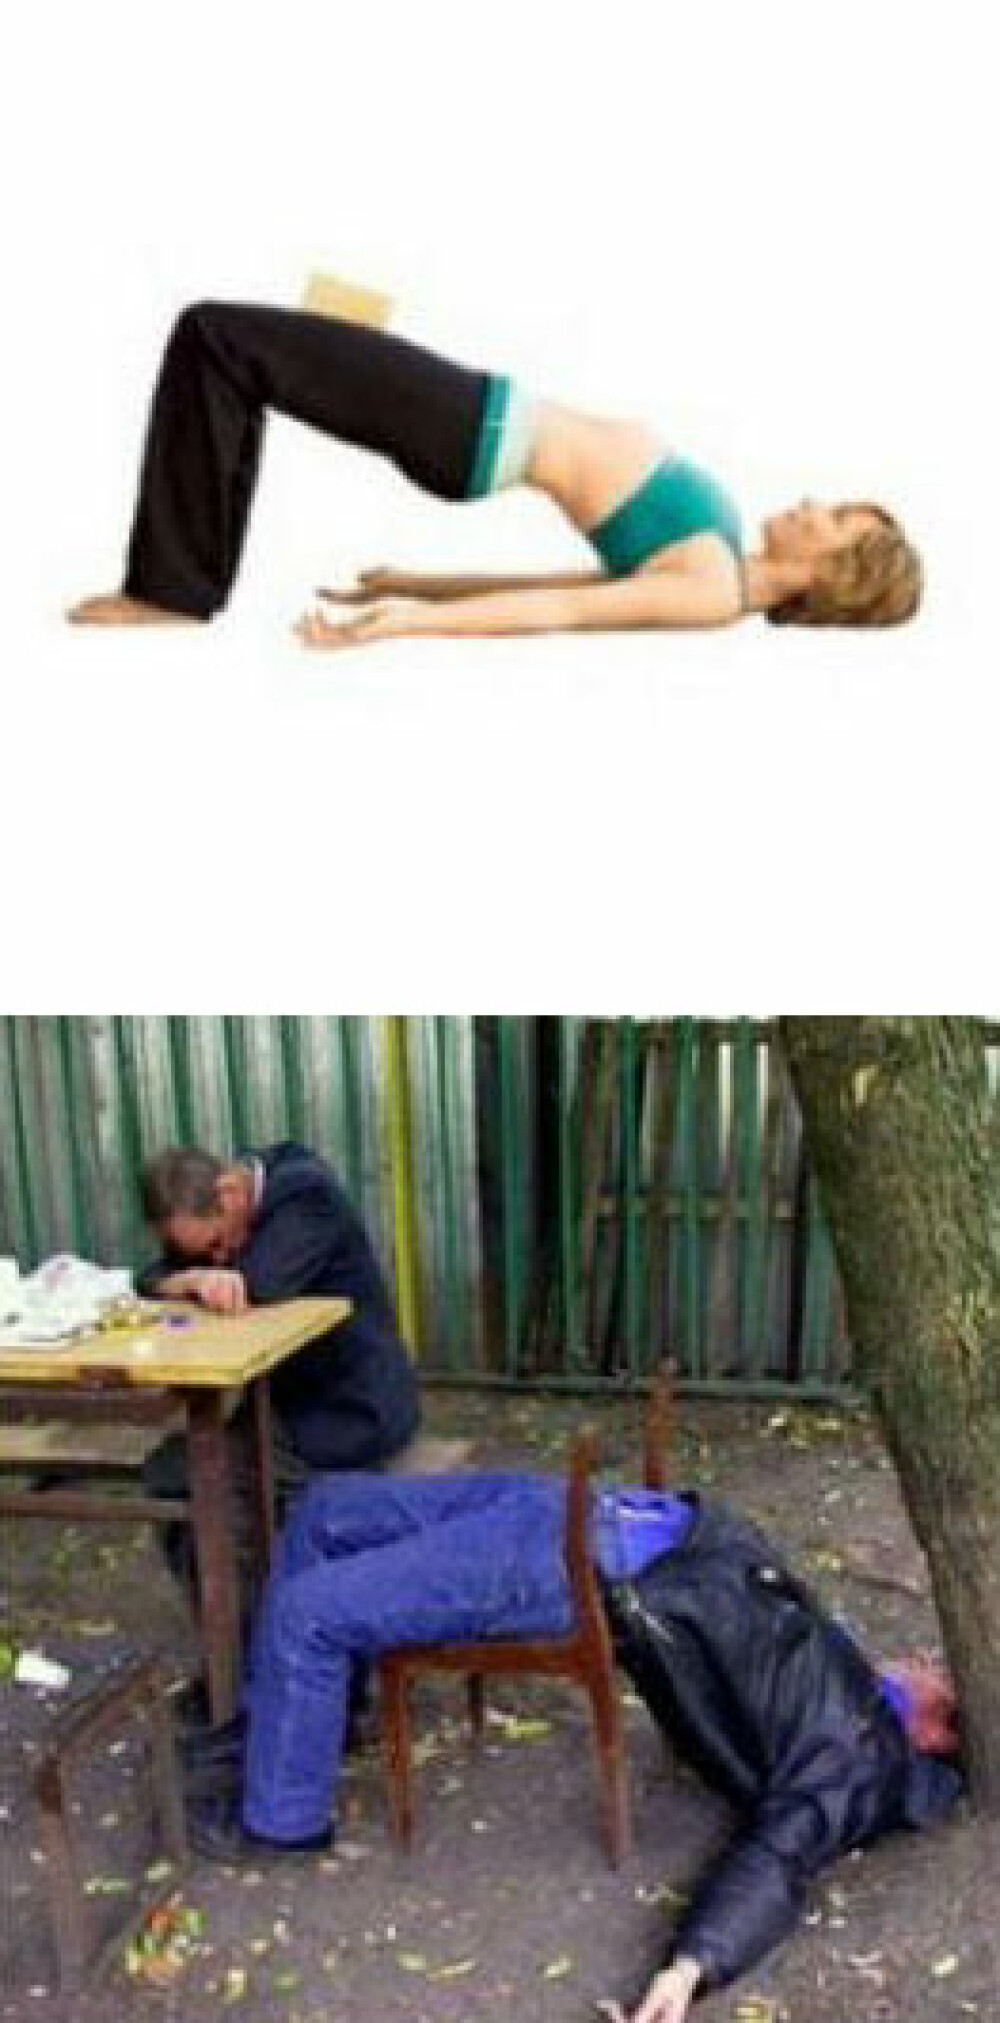 Alcoolul si yoga sunt acelasi lucru! Vezi aici DE CE! - Imaginea 8